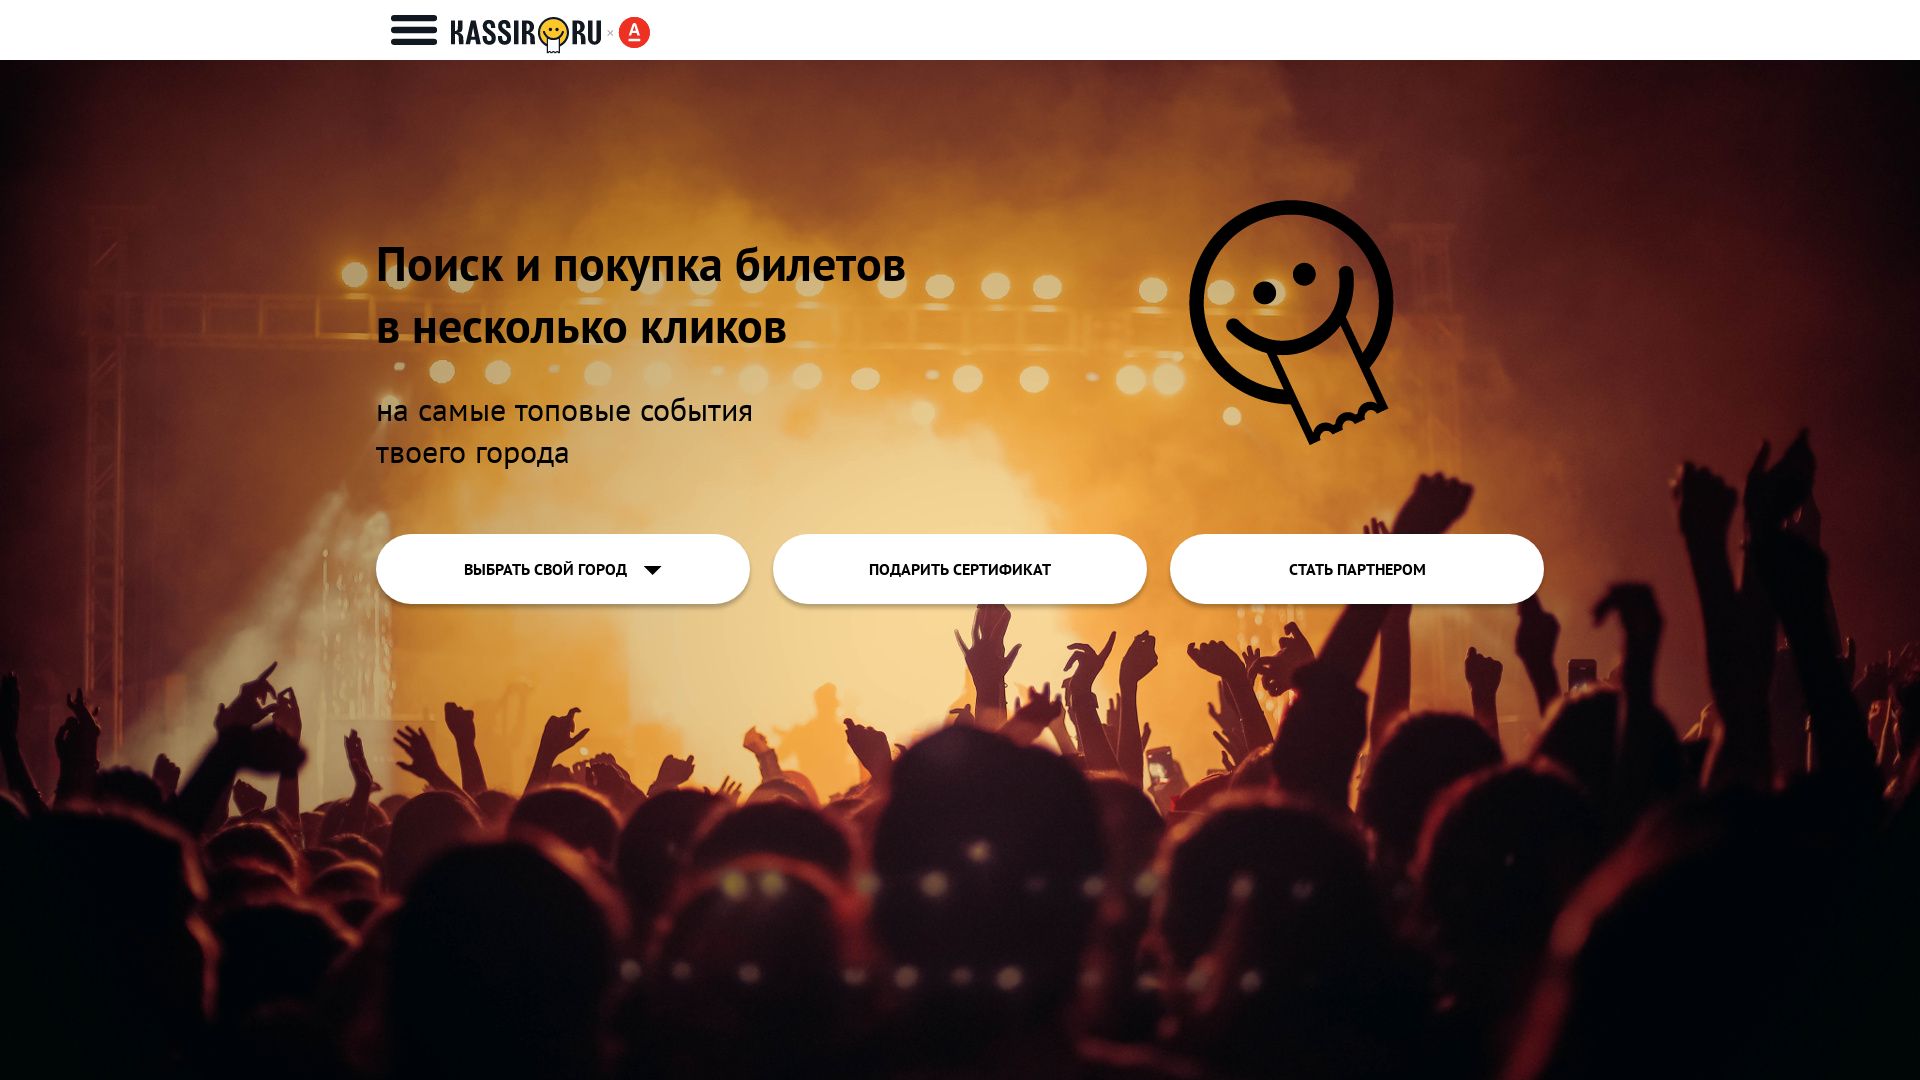 网站状态 kassir.ru 是  在线的